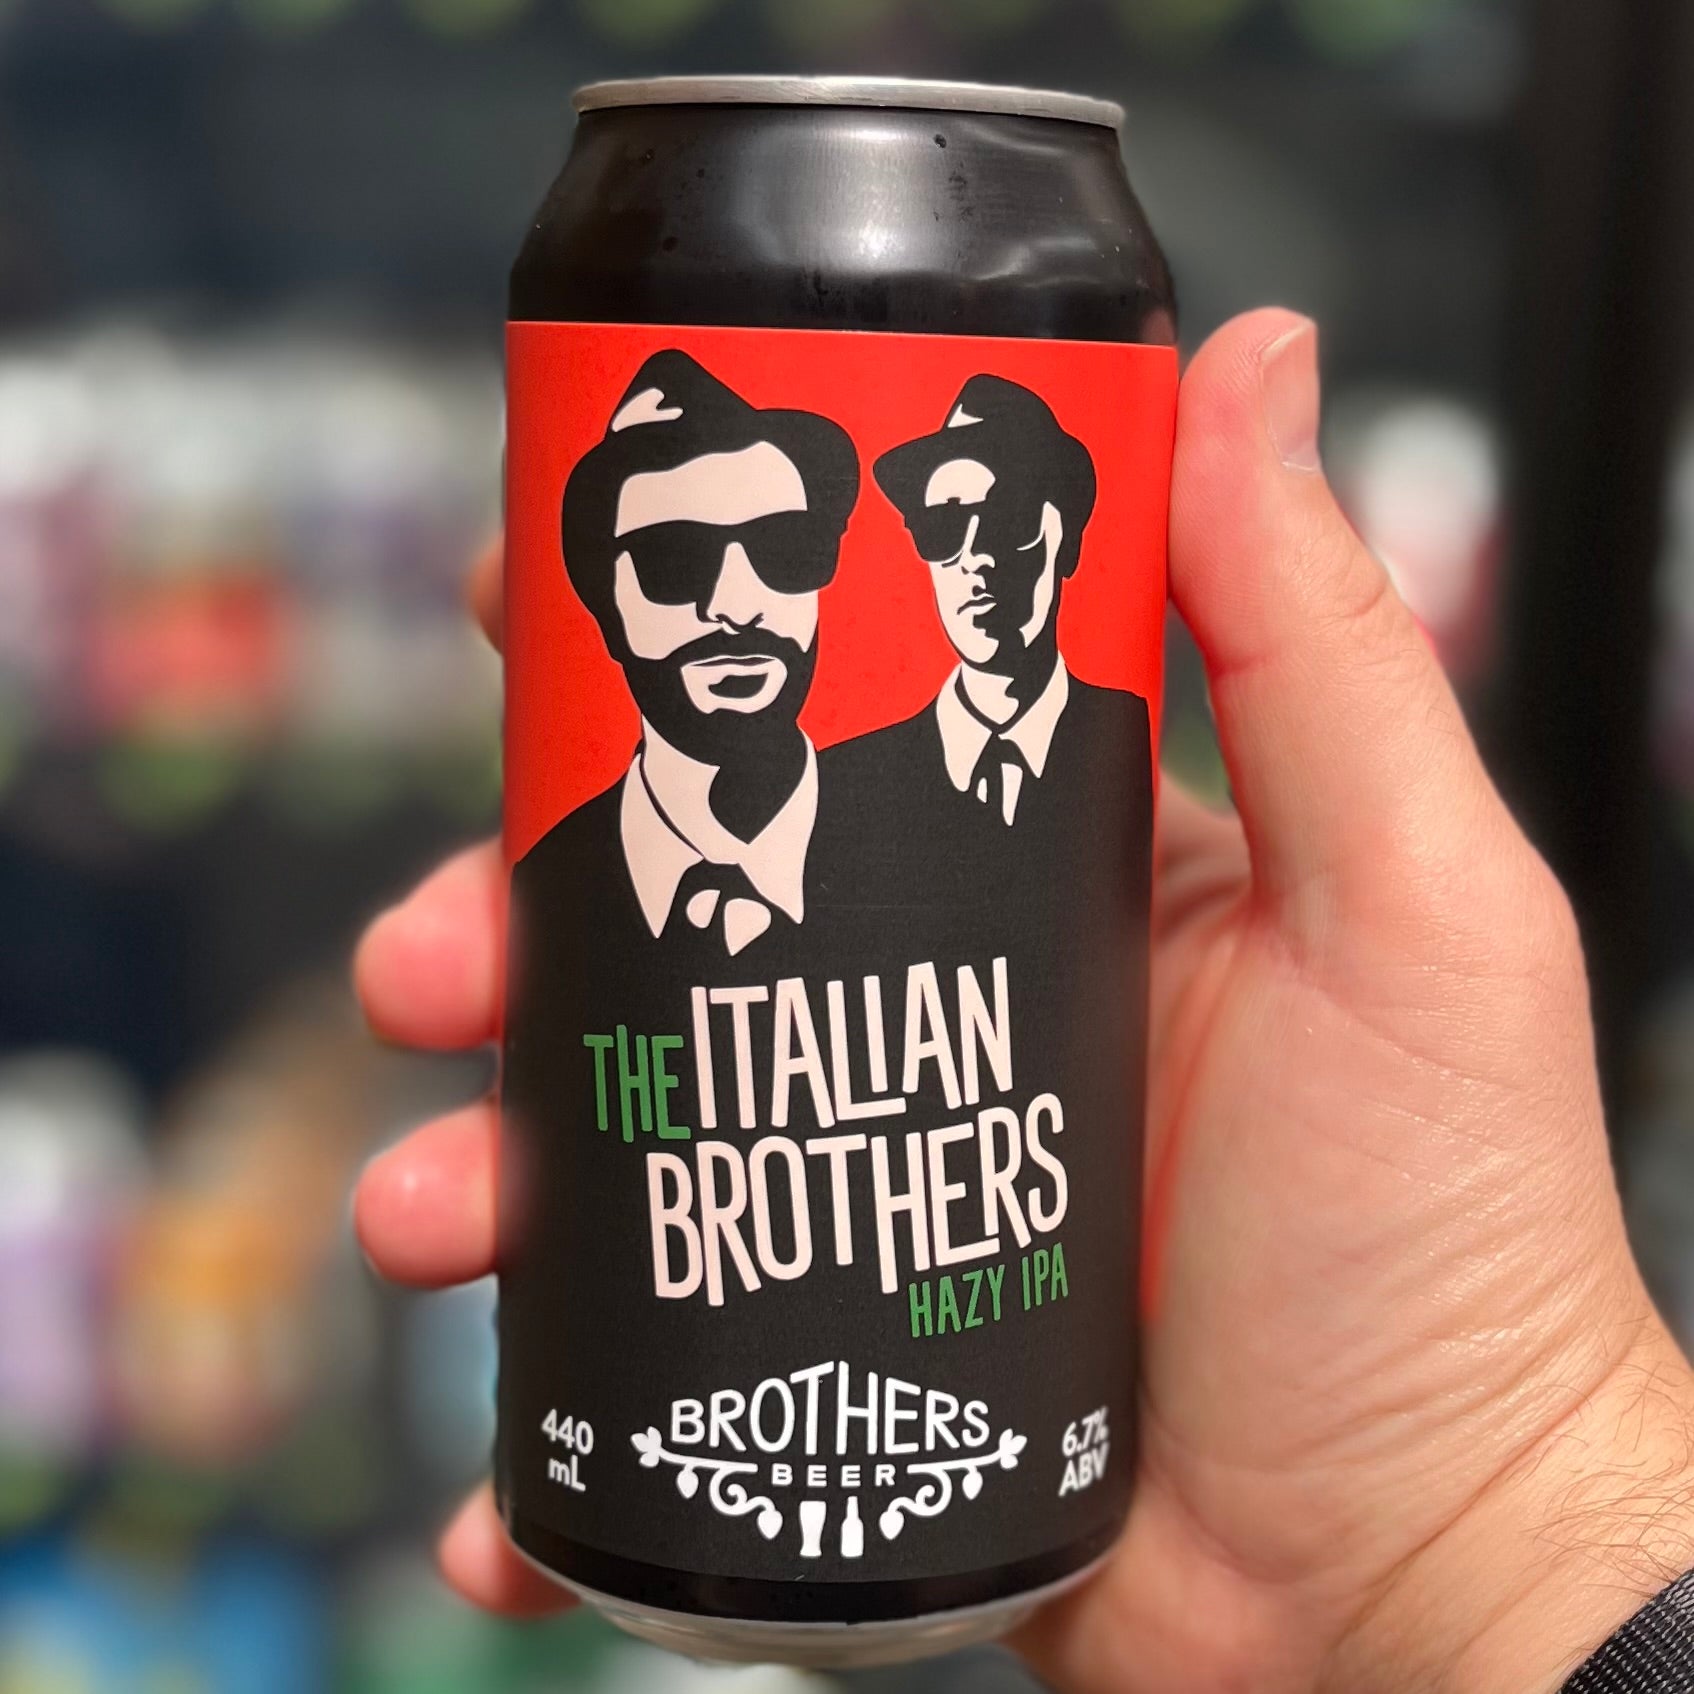 The Italian Brothers Hazy IPA